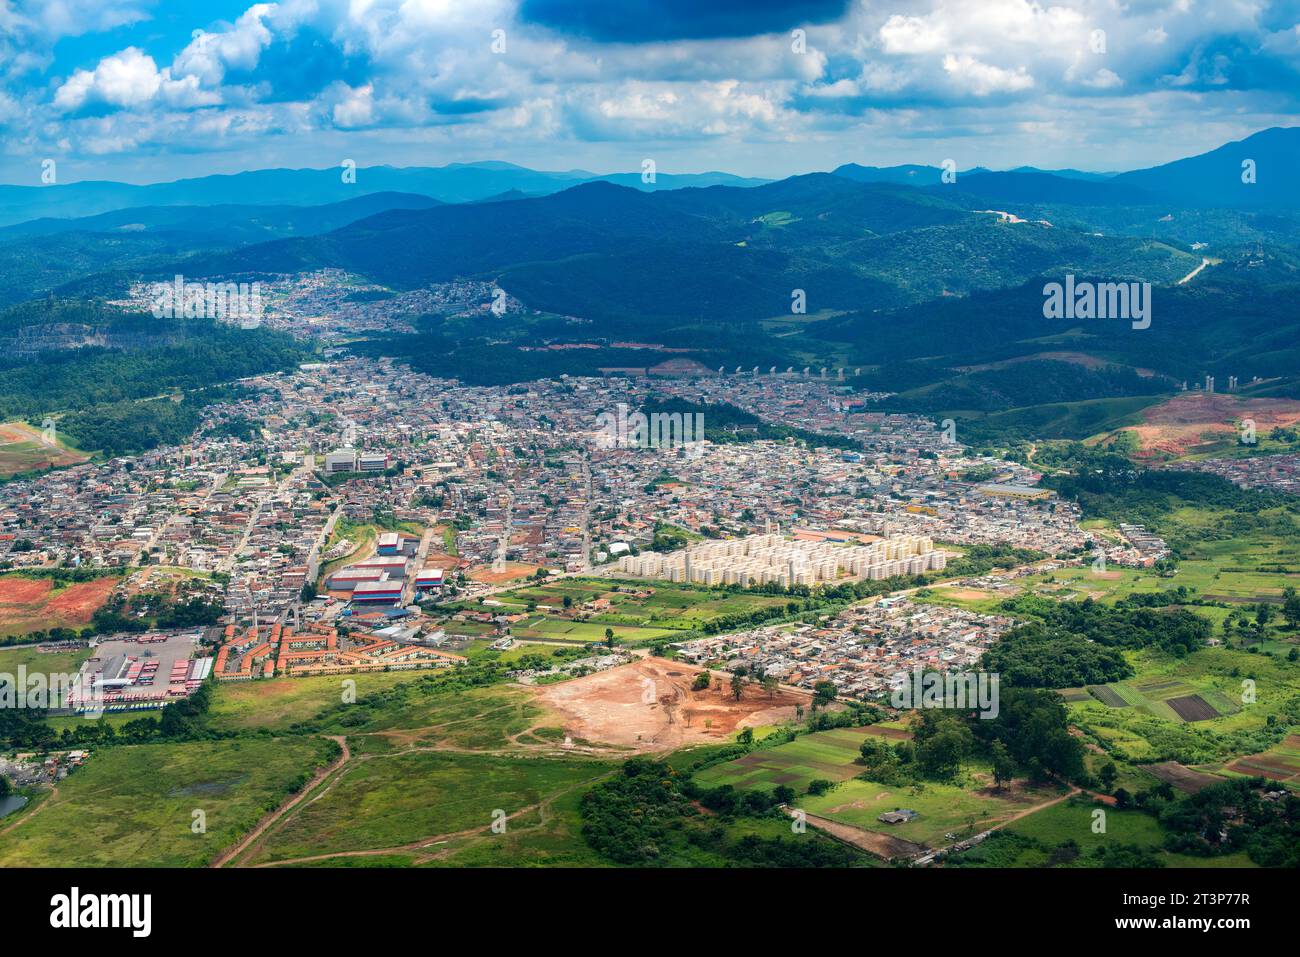 Vue aérienne d'un quartier pauvre de Sao Paulo, Brésil Banque D'Images